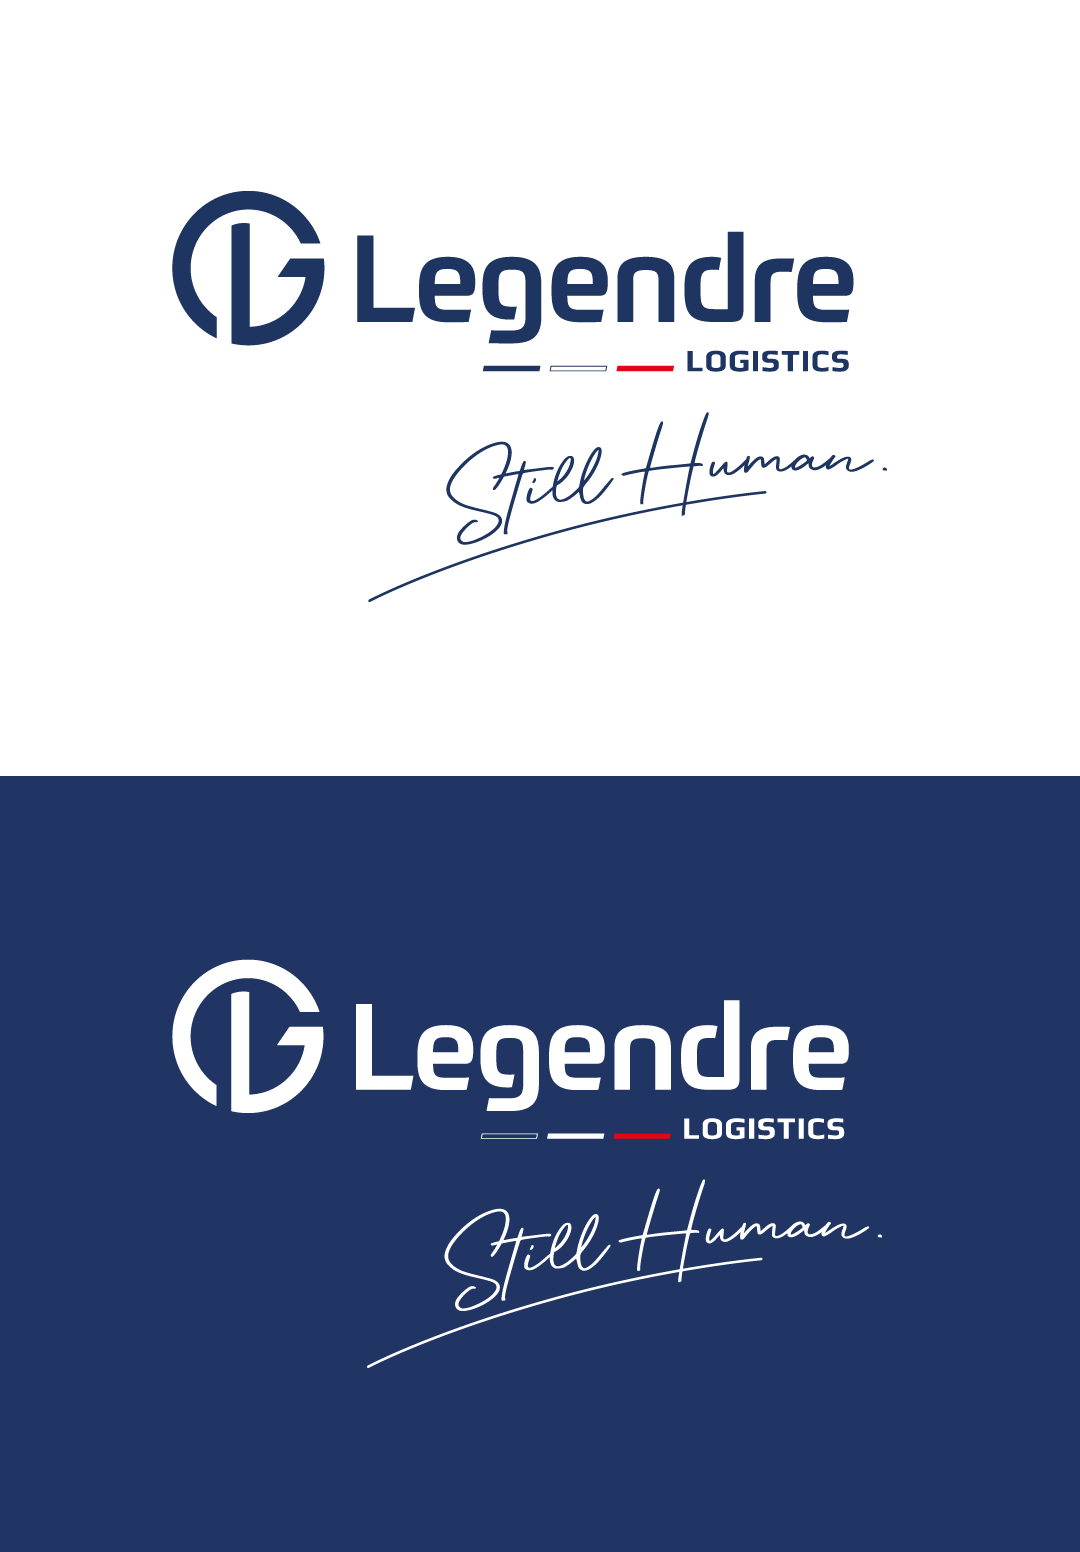 Nouveau logo Legendre logistics